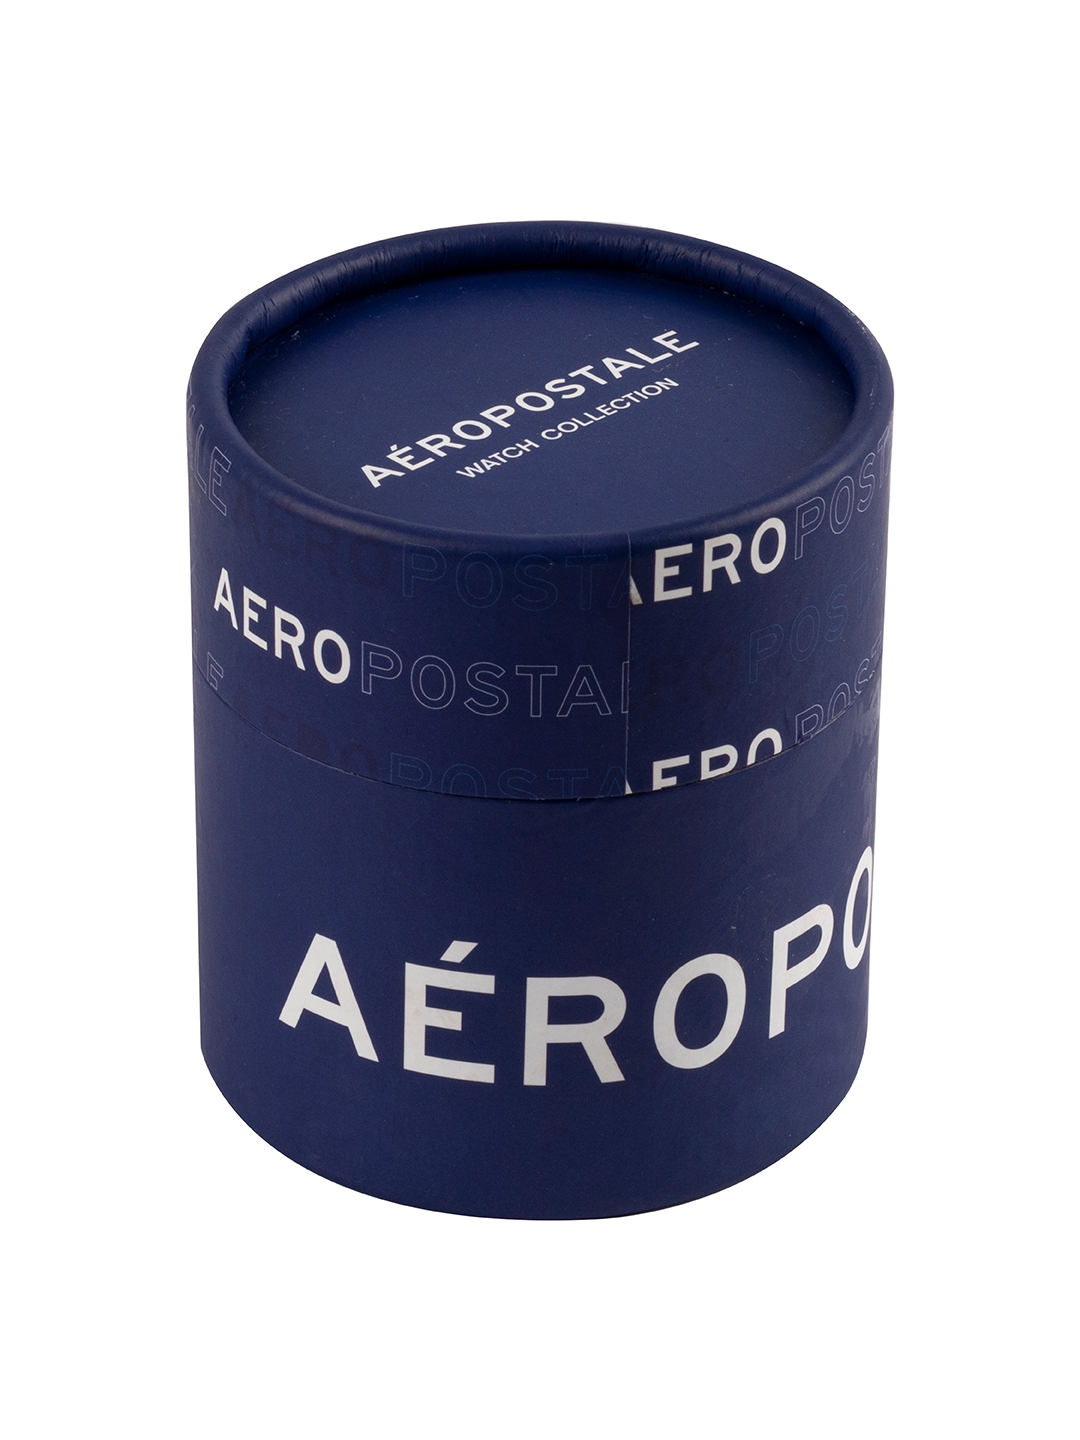 Aeropostale | Aeropostale "AERO_AW_A10_2_BLK" Classic Men’s Analog Quartz Wrist Watch, Black Metal Alloy case, Black Dia 4